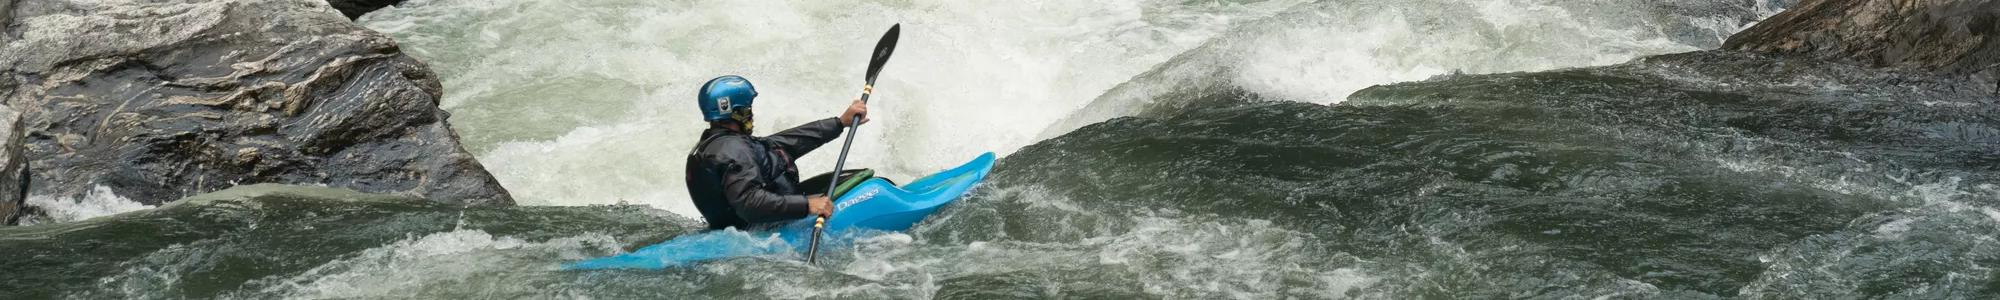 Dagger Surfing Kayaks